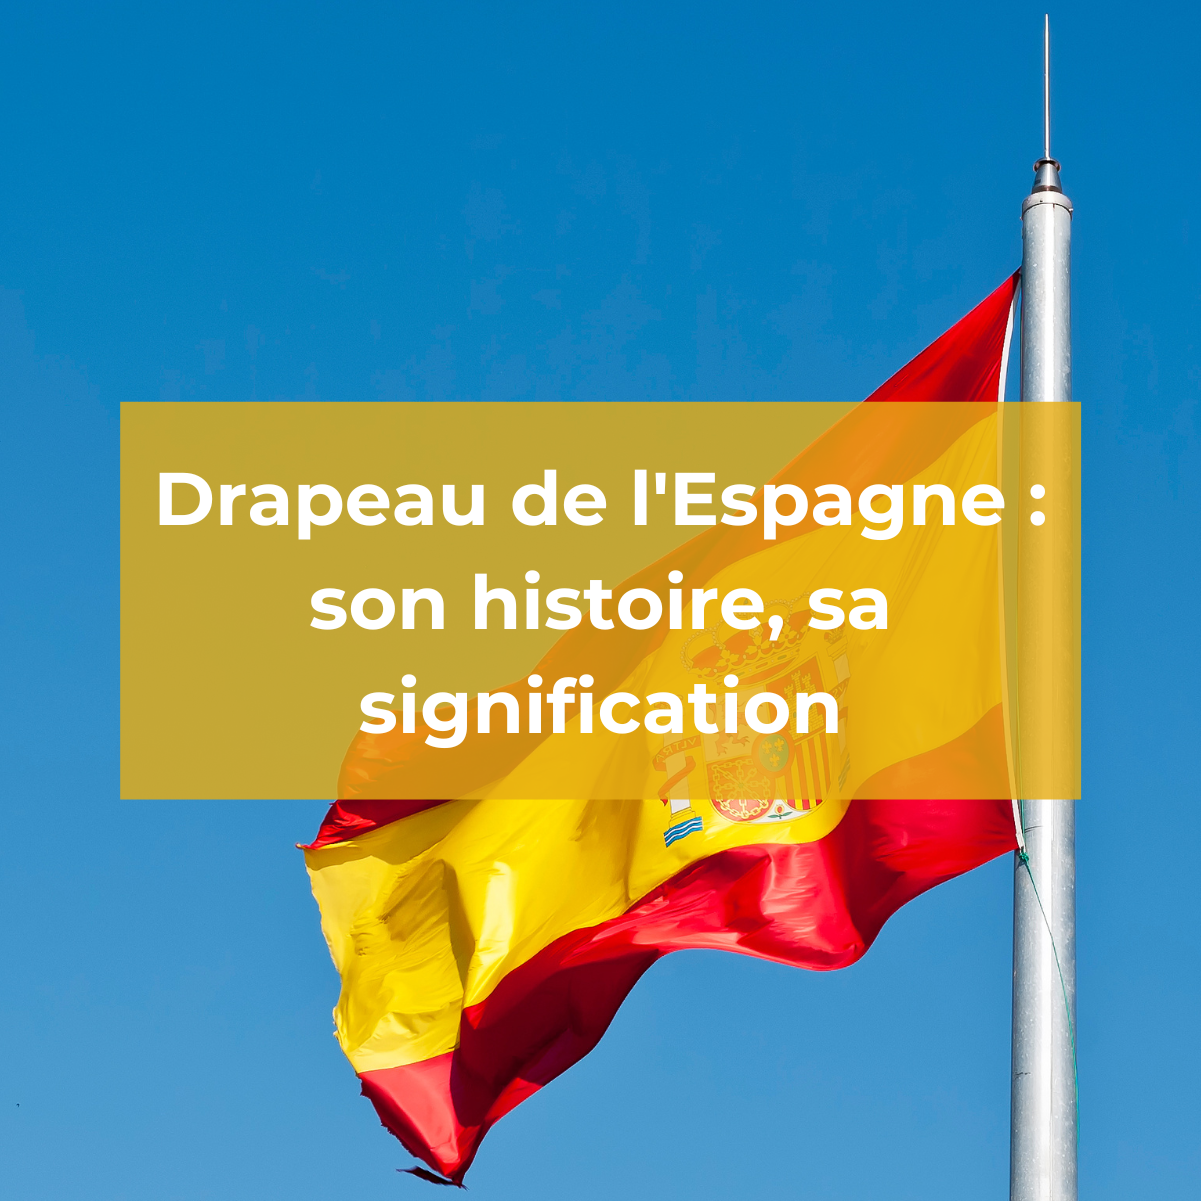 Espagne : Tout savoir sur l’histoire et la signification de son drapeau